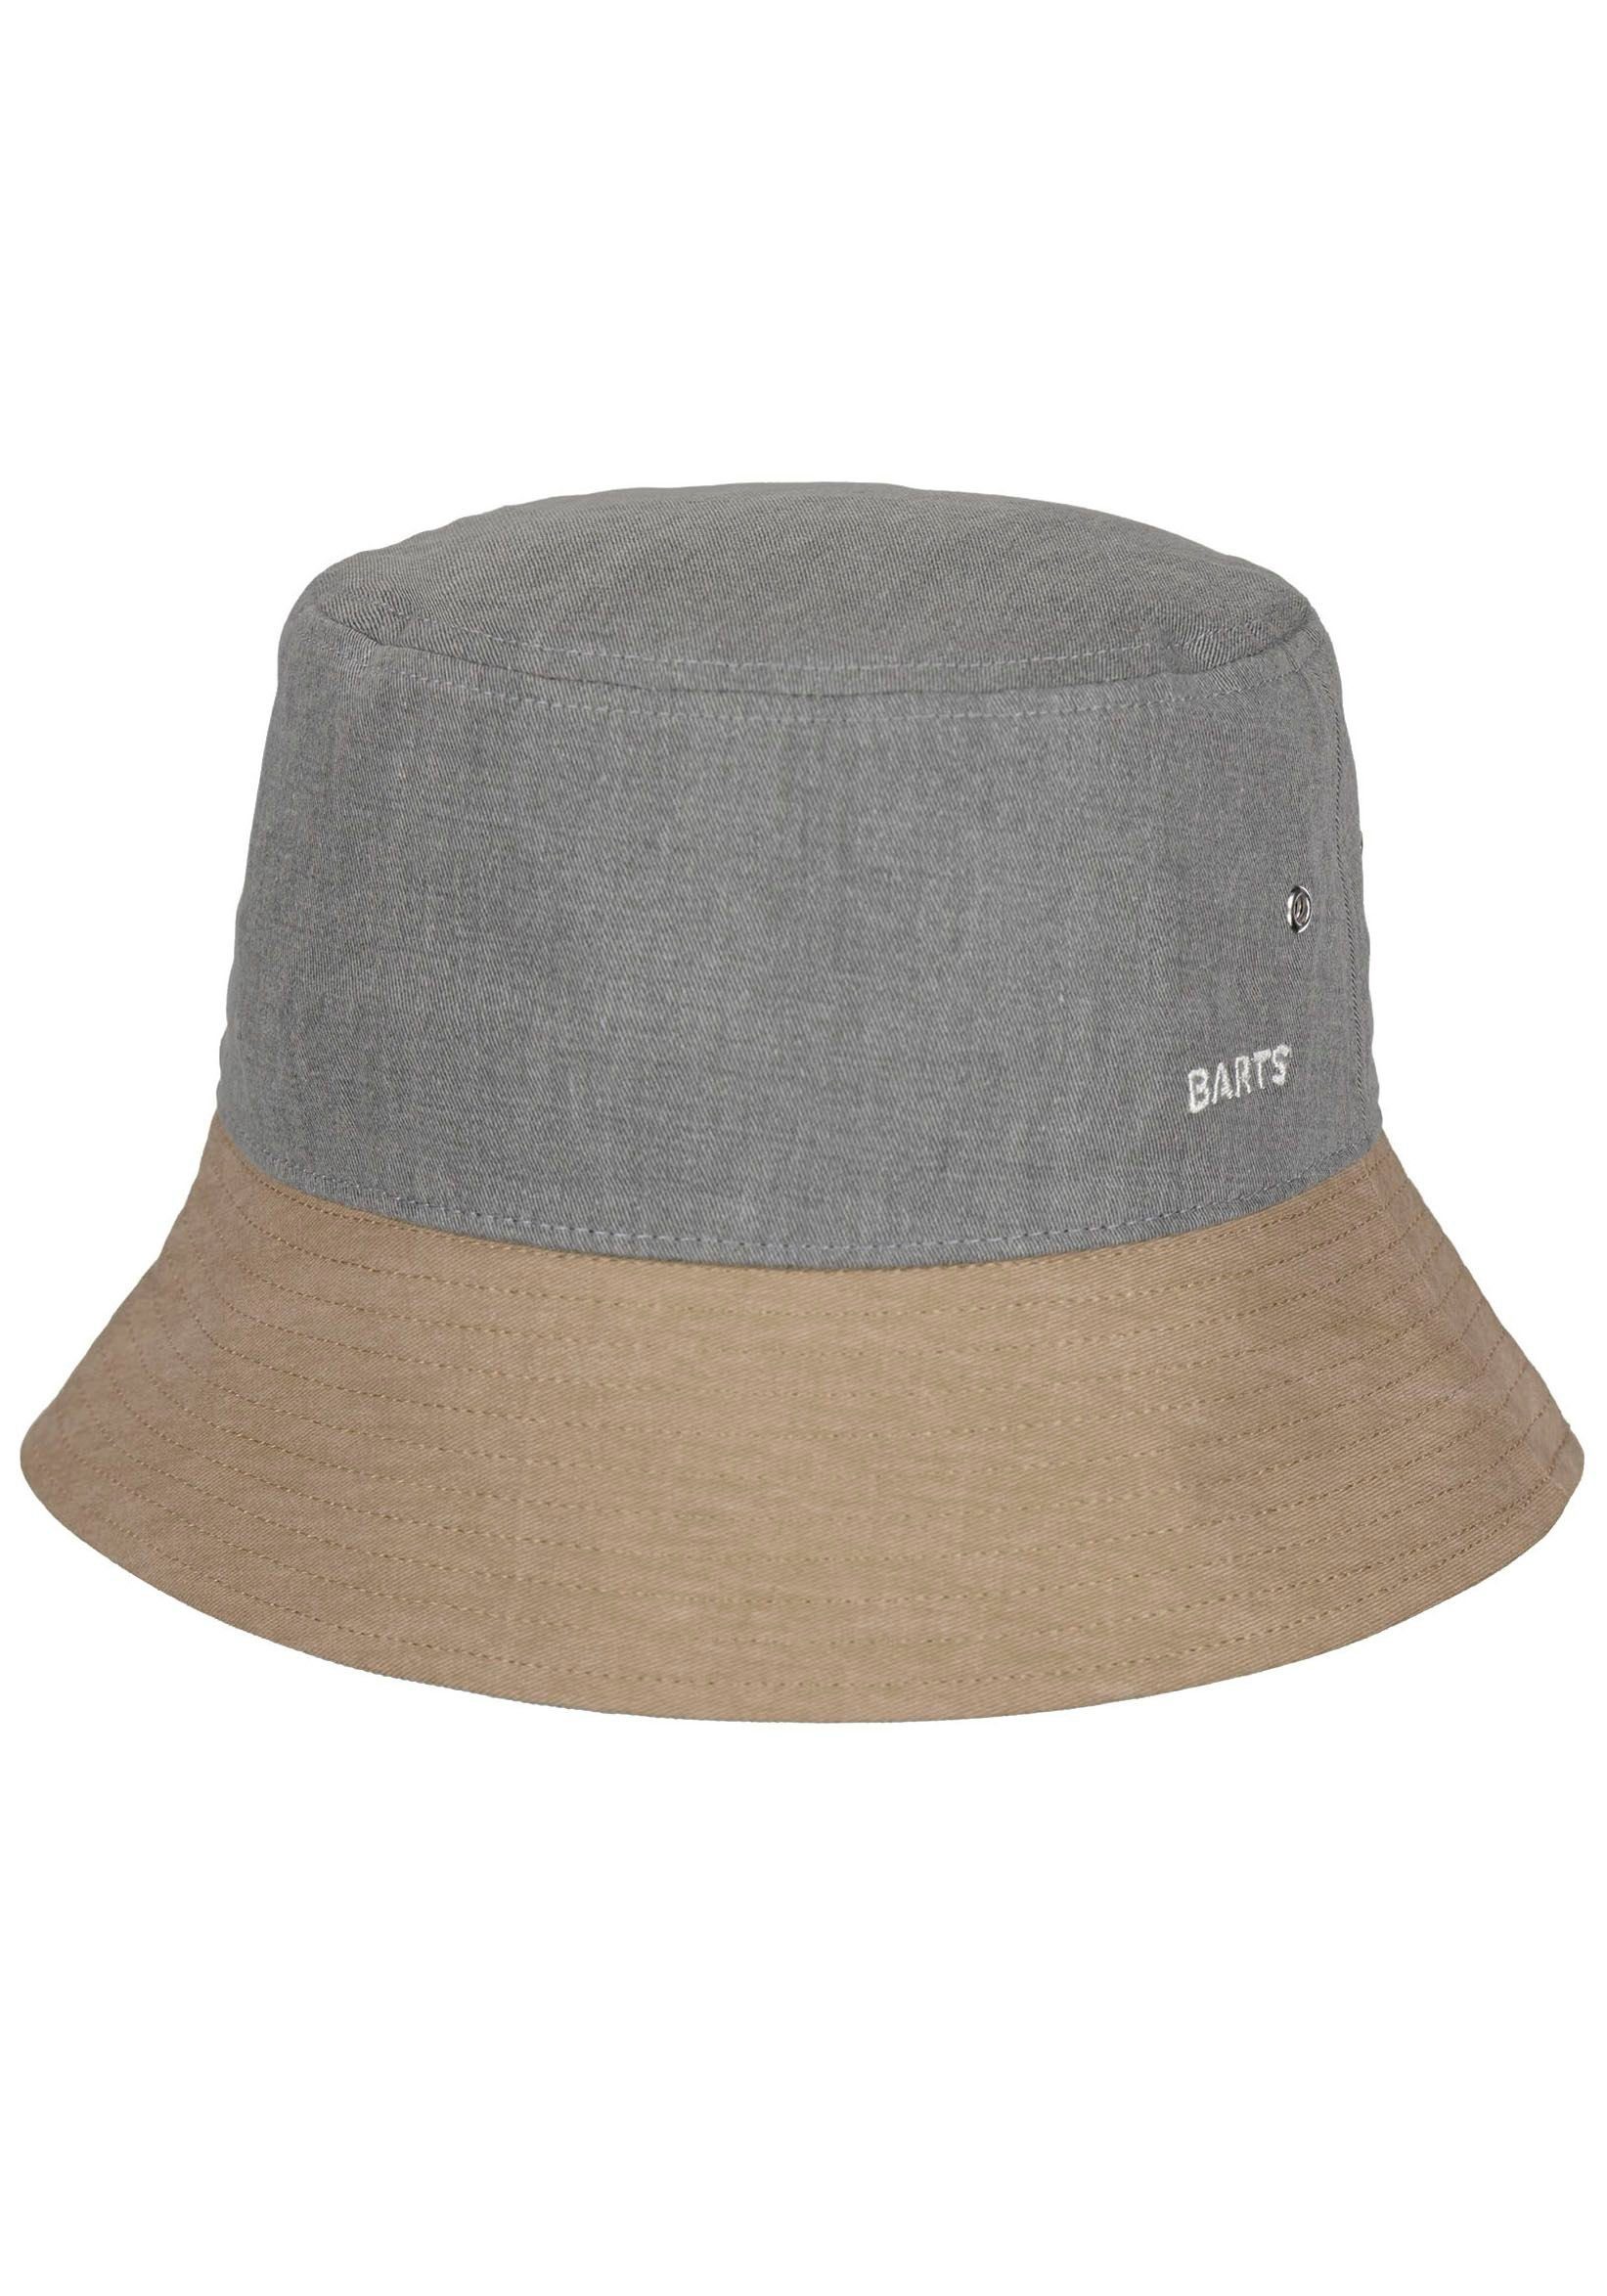 Barts Fischerhut Yarrow Hat mit grau-beige Luftösen